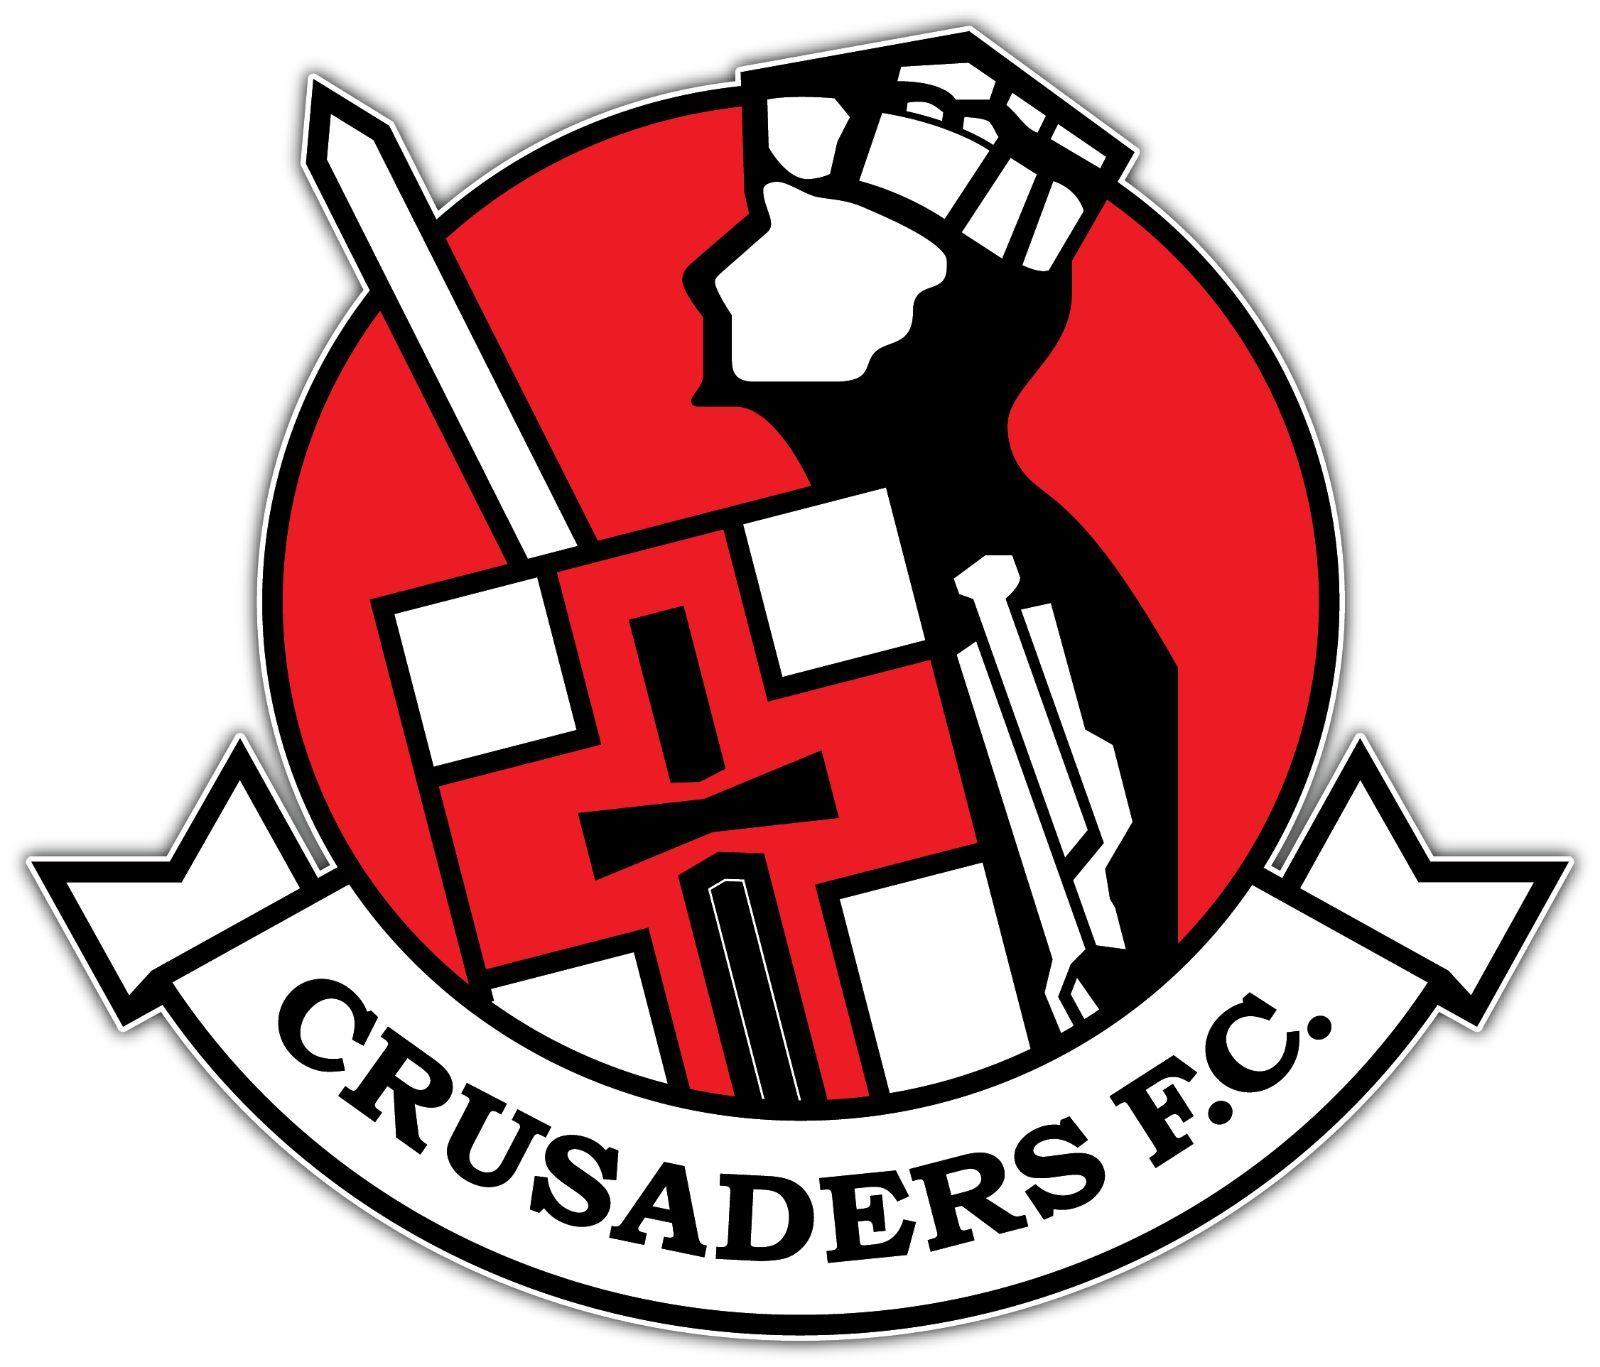 Crusaders Soccer Logo - $2.99 - Crusaders Fc Ireland Football Soccer Car Bumper Sticker ...